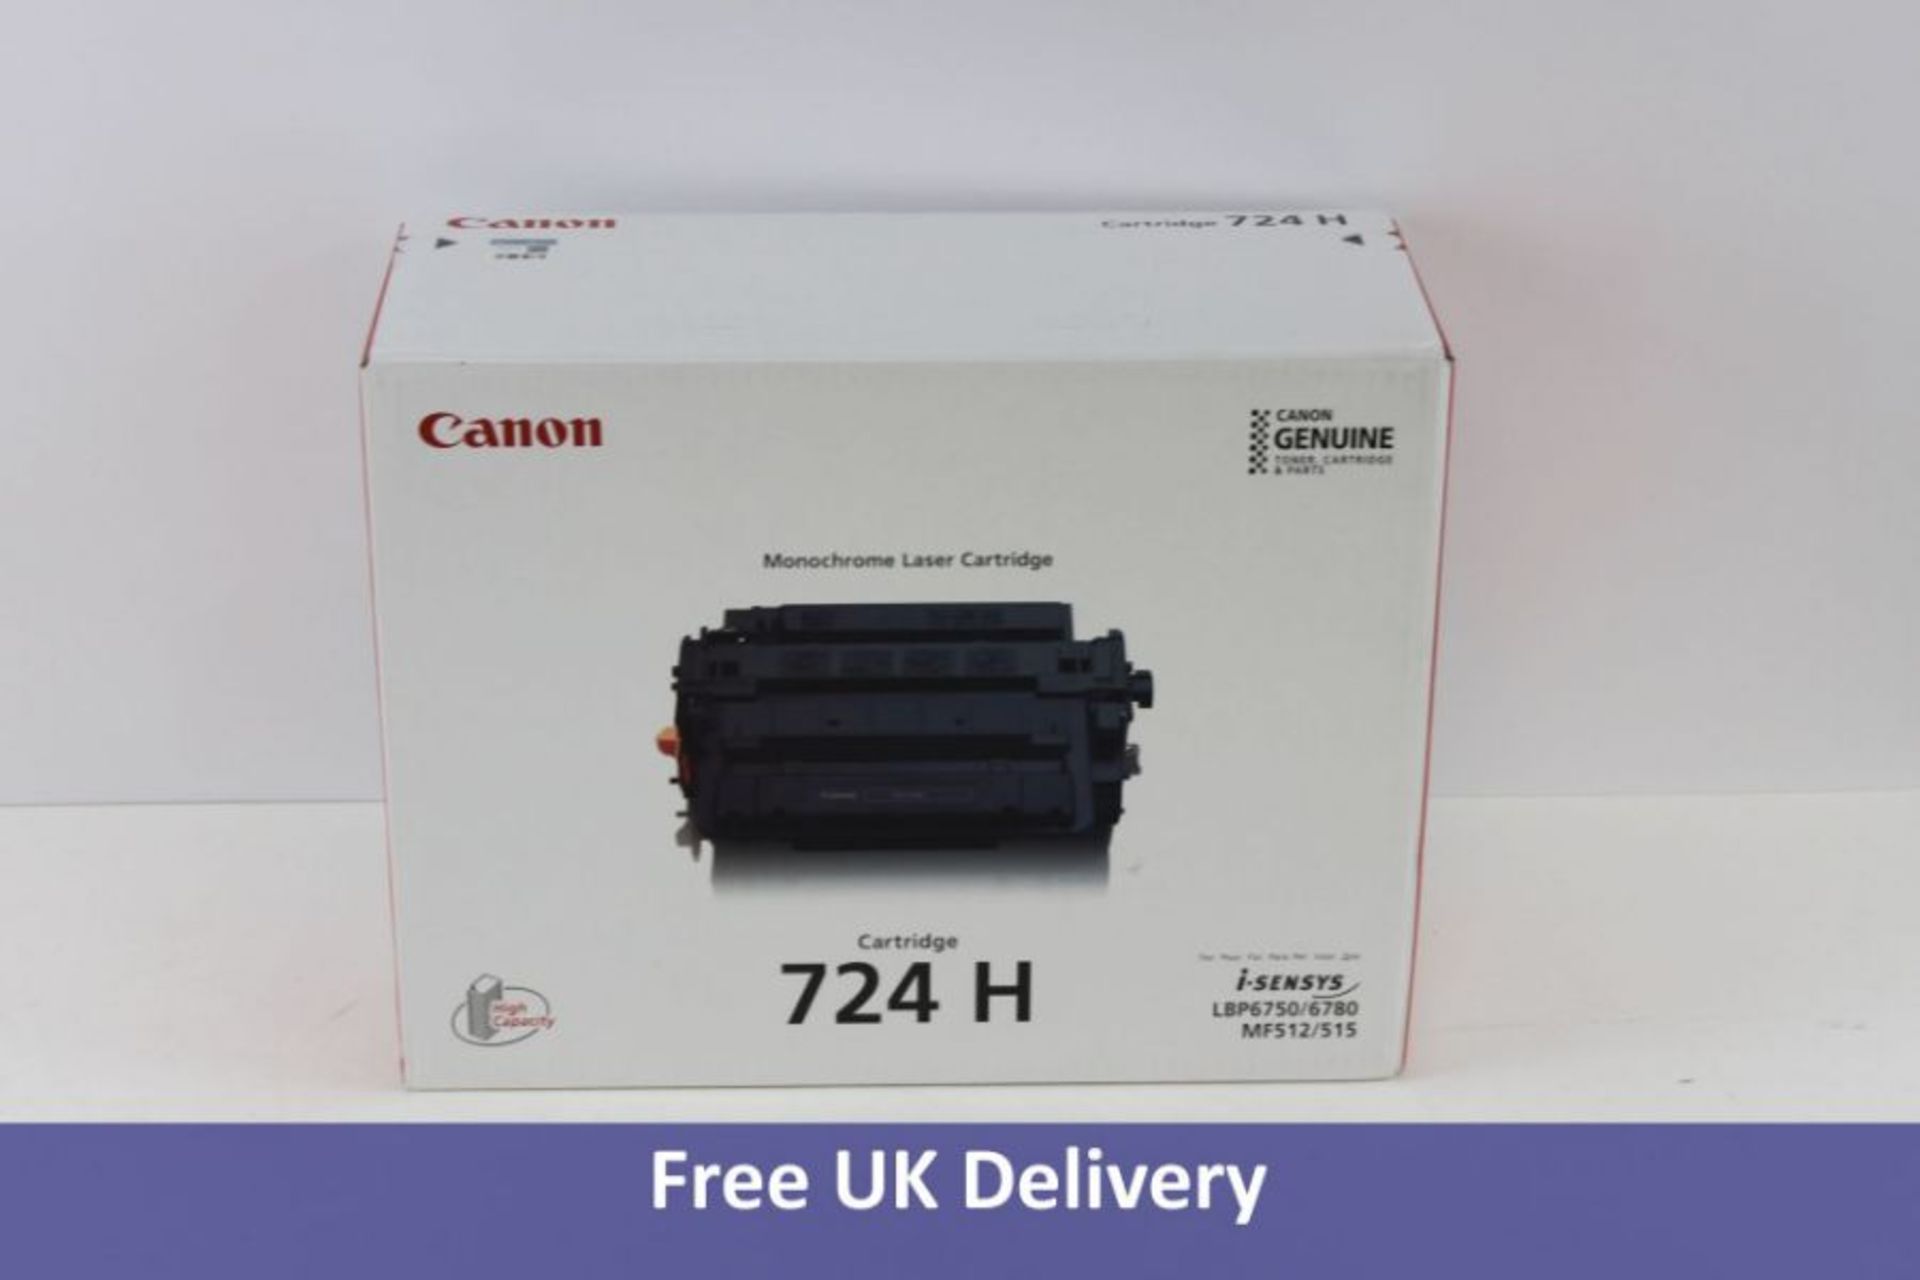 Canon Original Toner Cartridge, Black, 724H